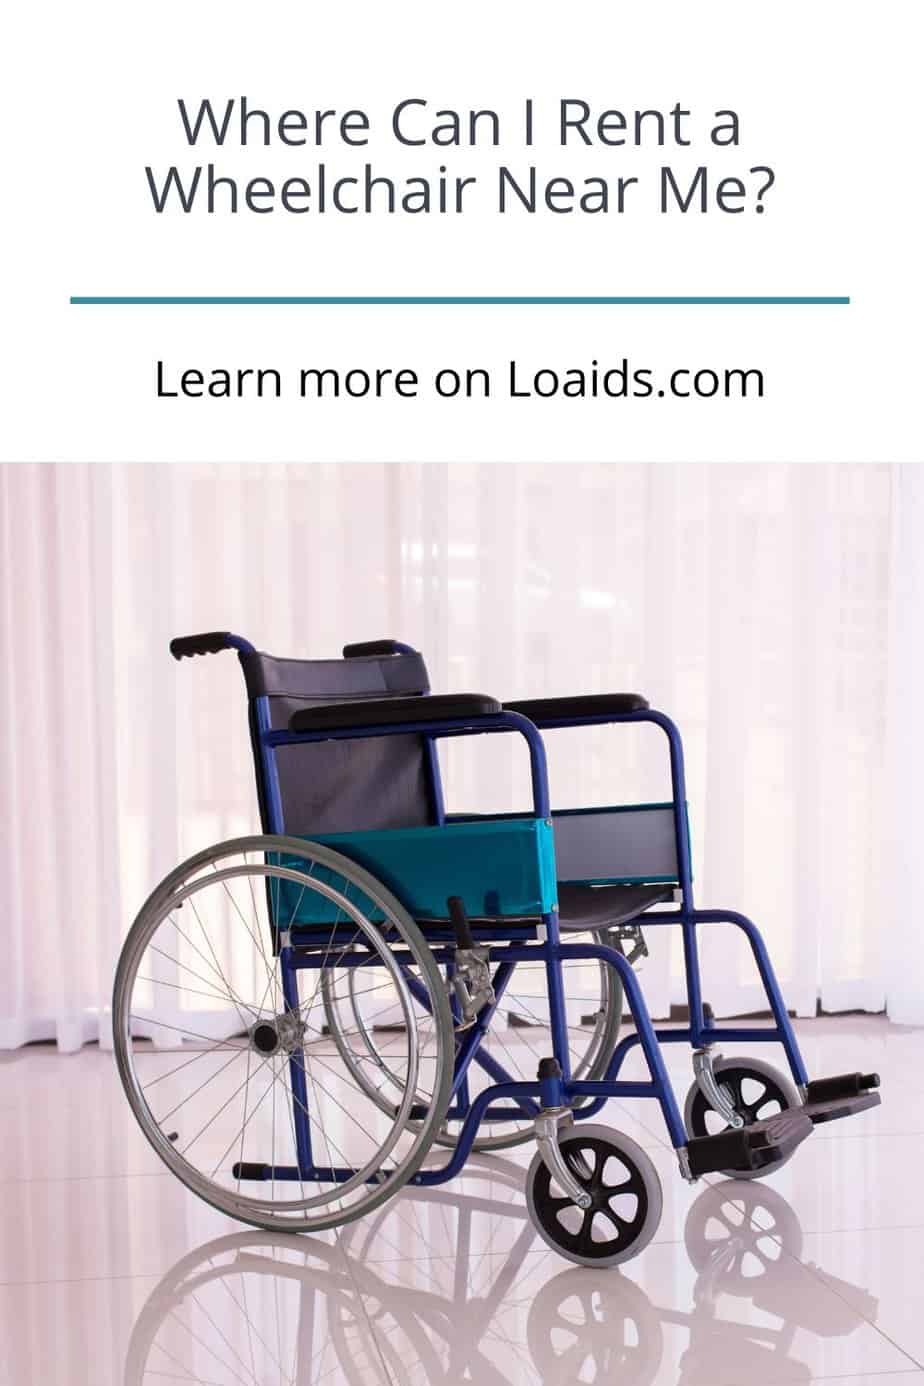 Where Can I Rent a Wheelchair Near Me?